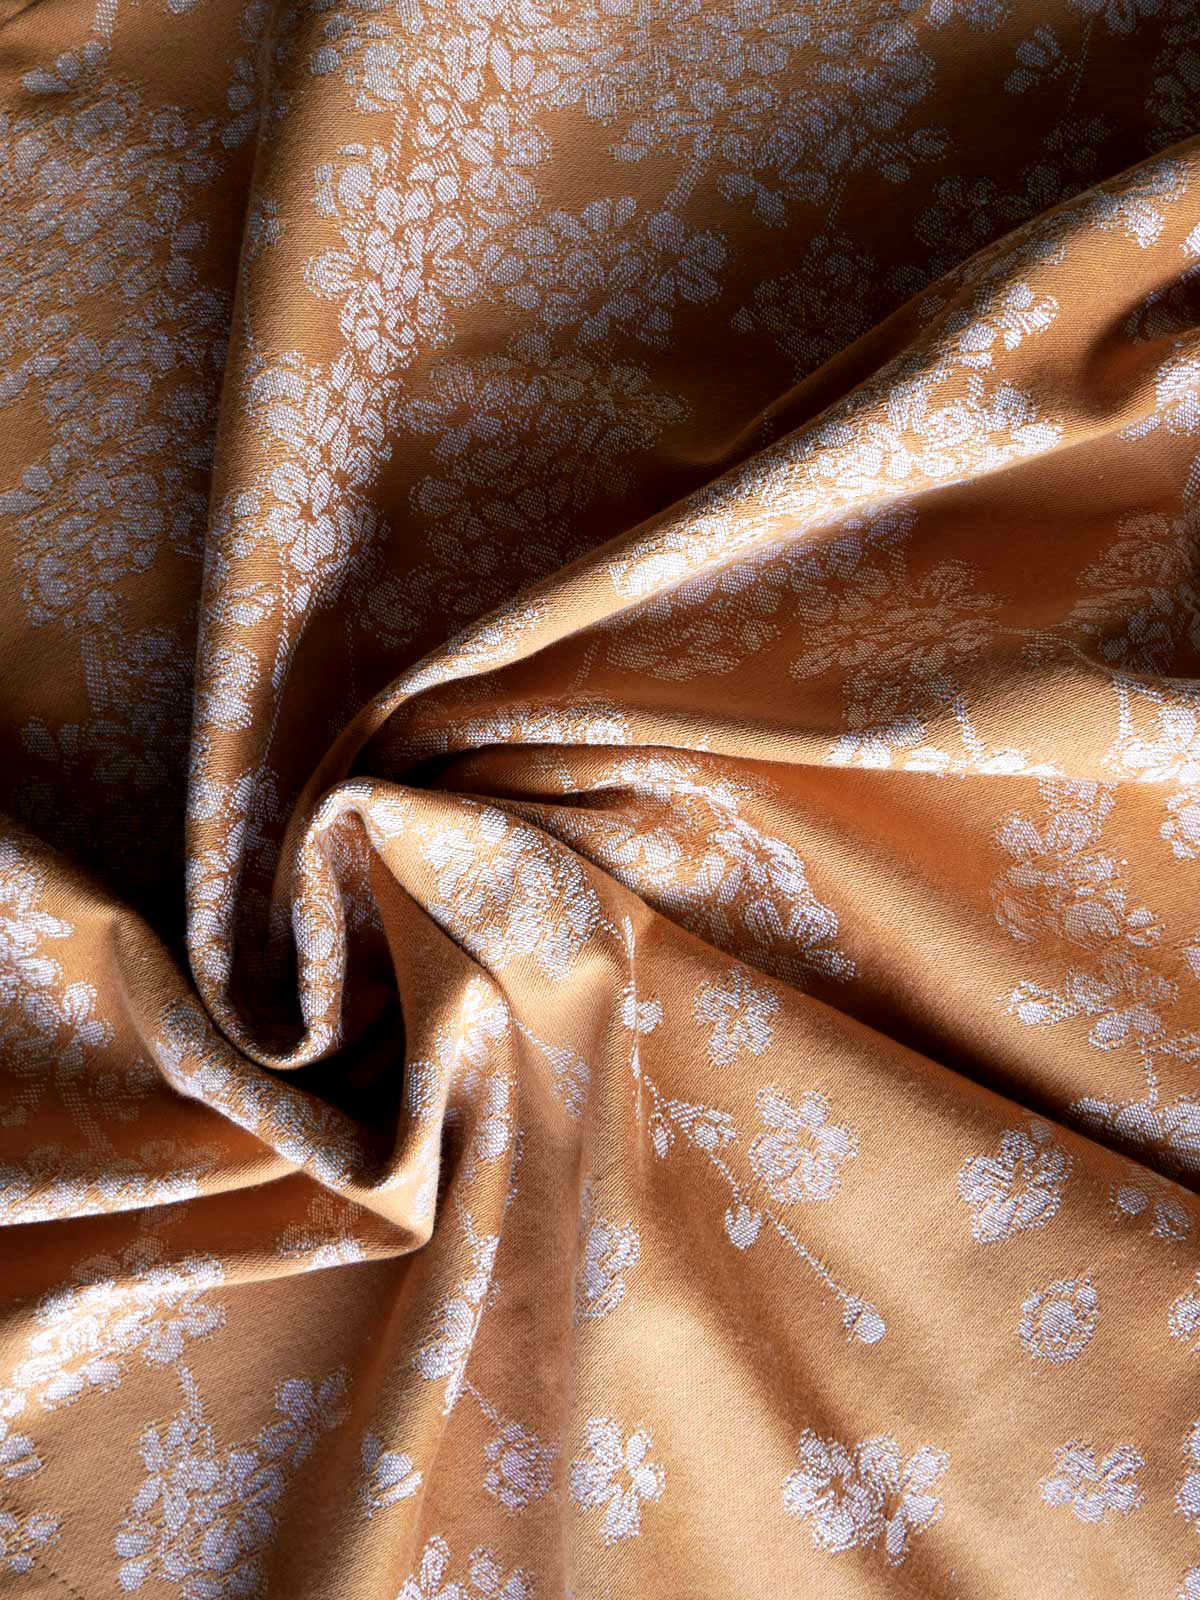 Blossom Ingot Fabric Pieces